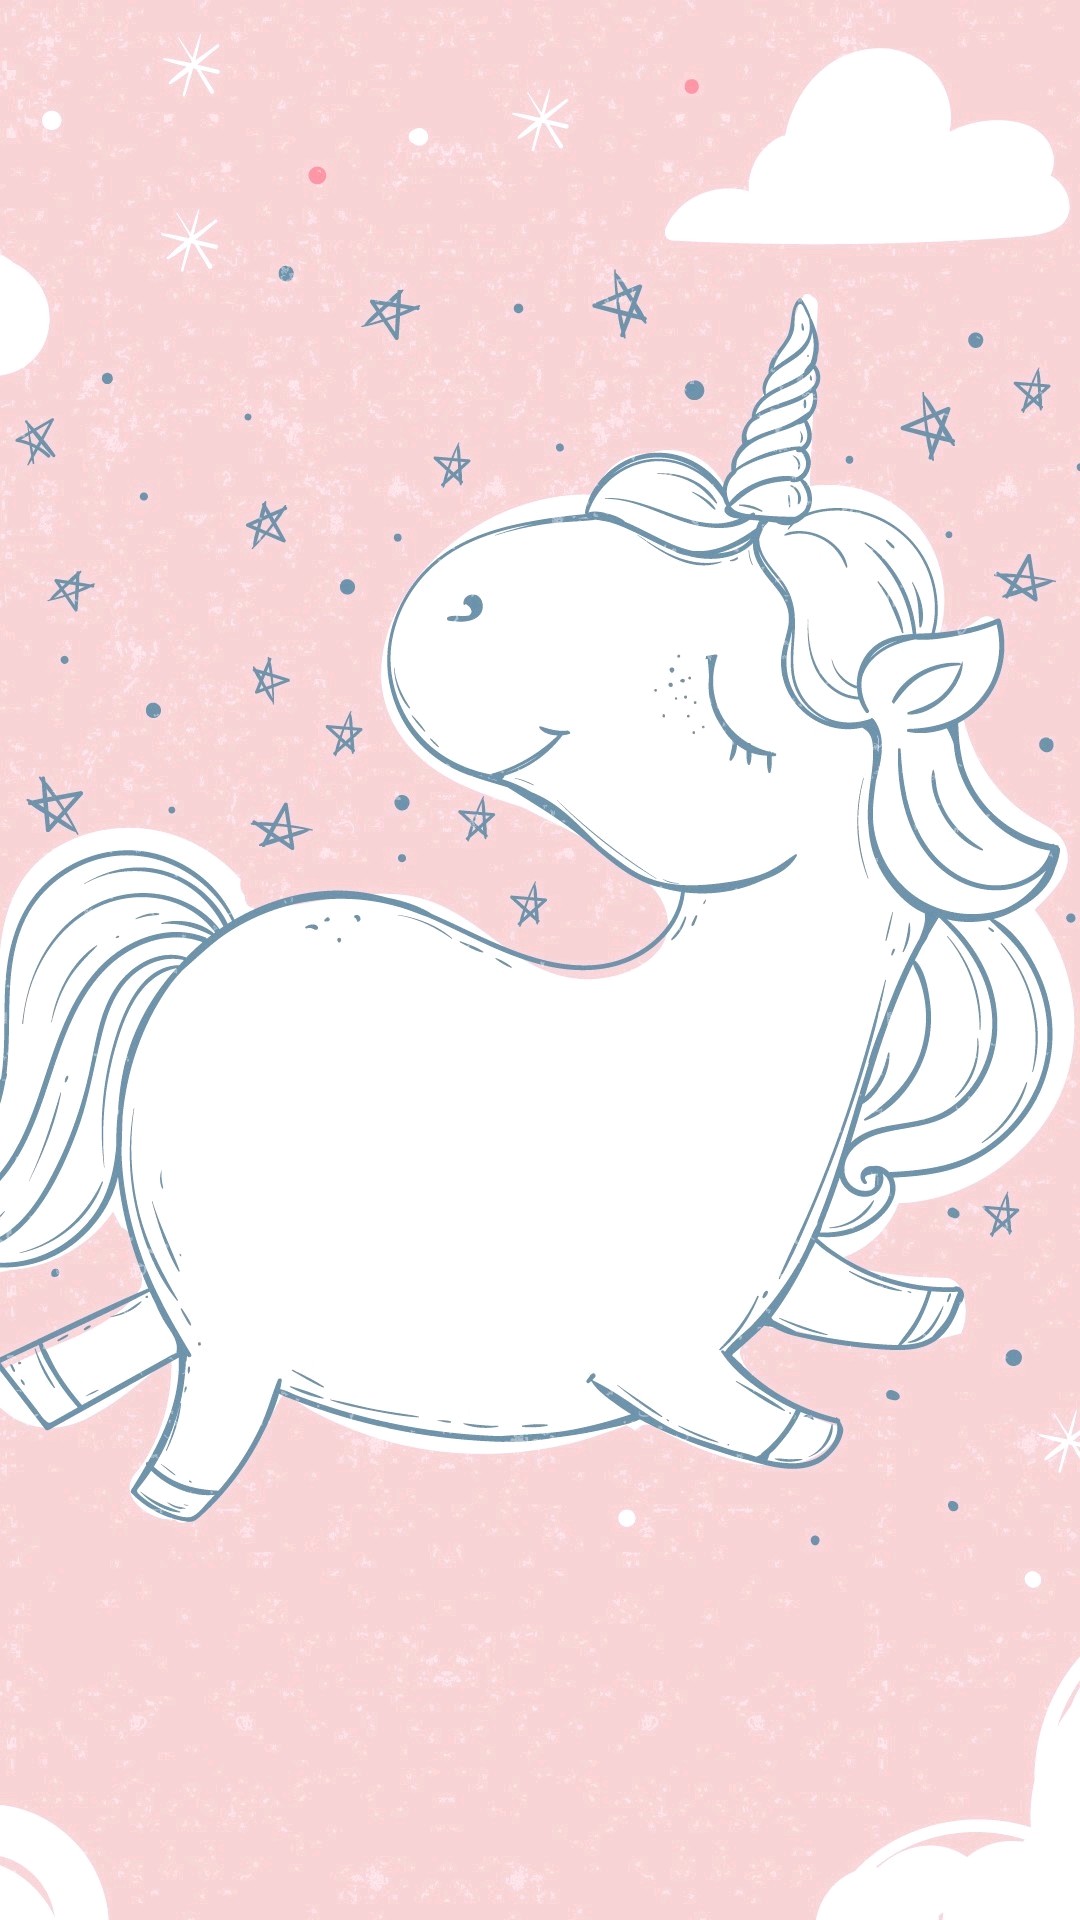 carta da parati unicorno b & m,cartone animato,personaggio fittizio,illustrazione,unicorno,creatura mitica